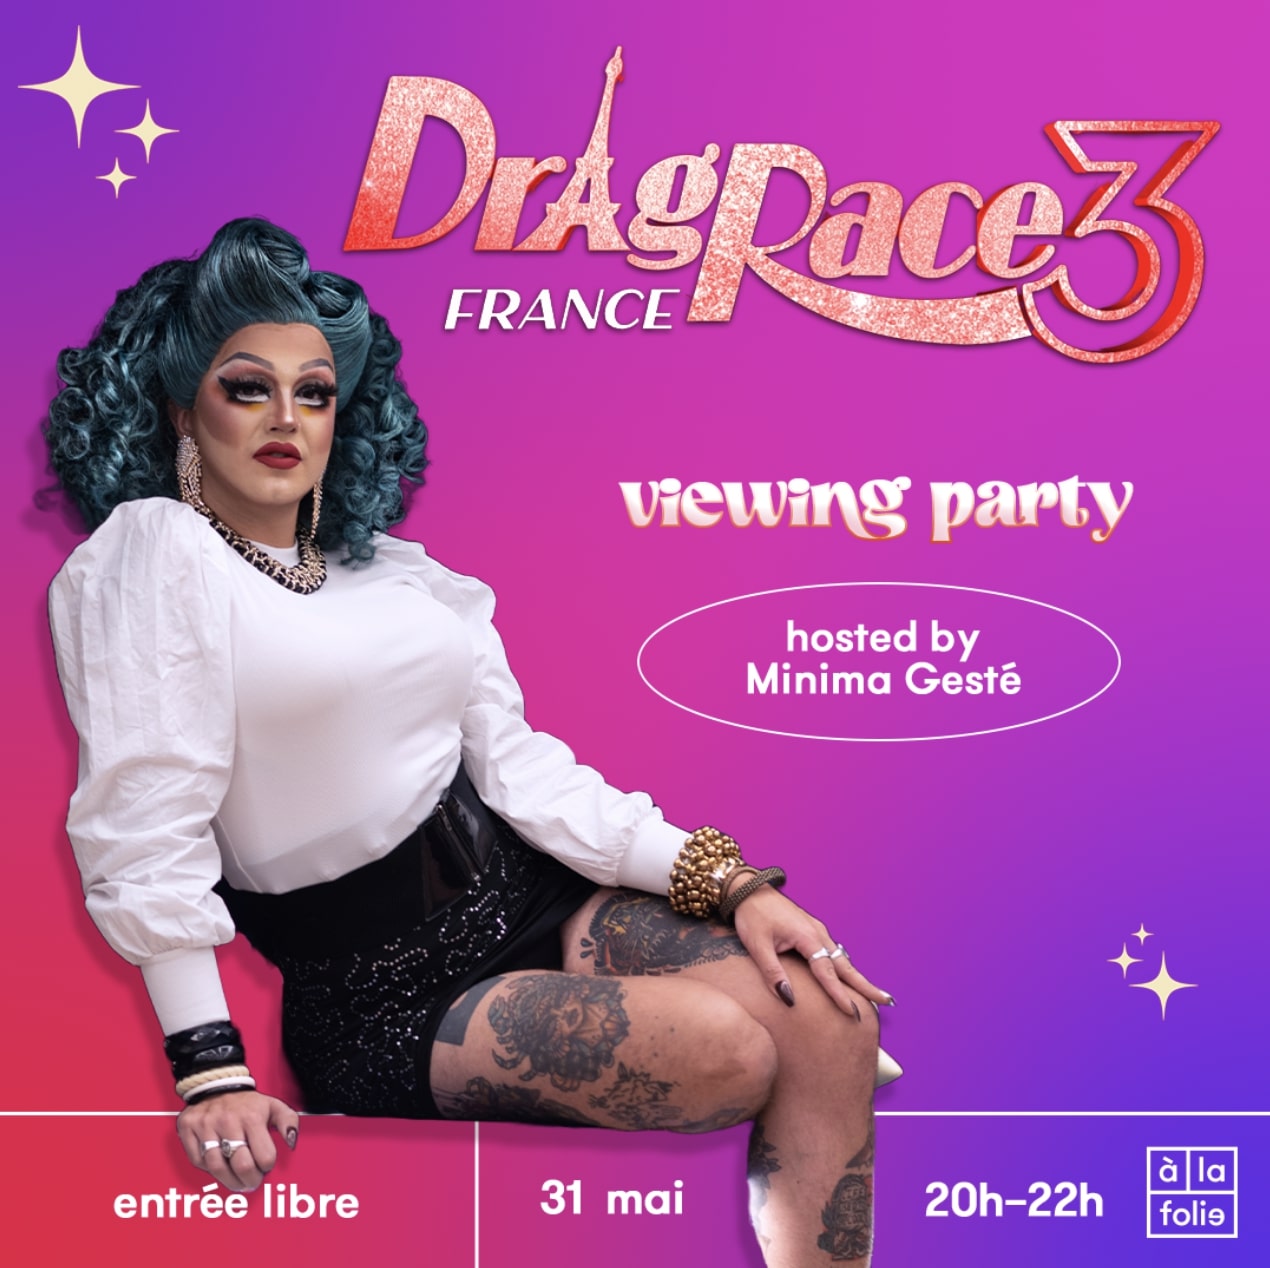 Drag Race France Viewing Party · hosted par Minima Gesté